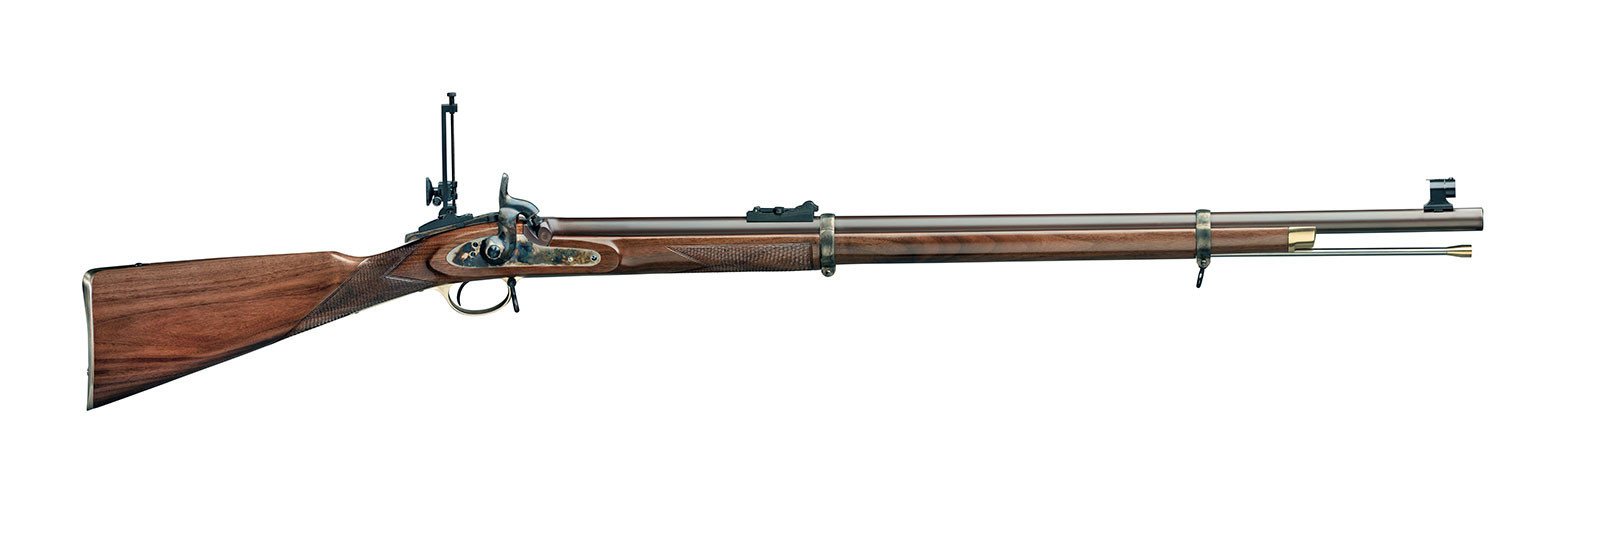 Fucile 1860 Volunteer Target Rifle